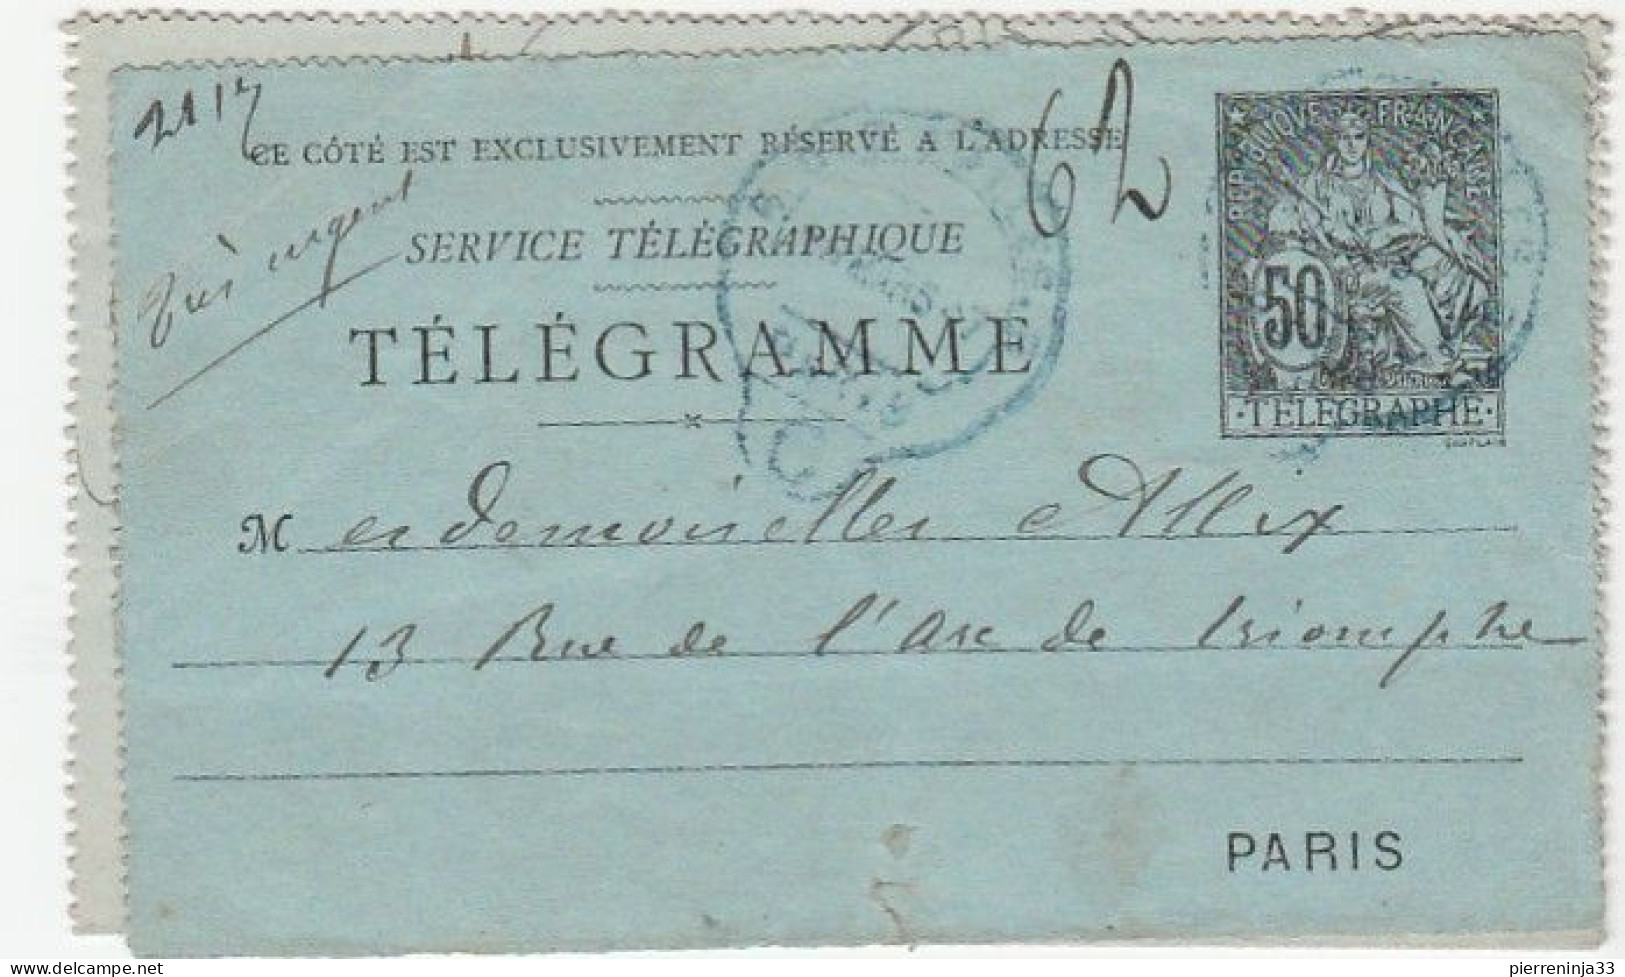 Lot De 2 Entiers / Carte Pneumatique Fermée Et Télégramme (devant Et Fente) - Collections & Lots: Stationery & PAP